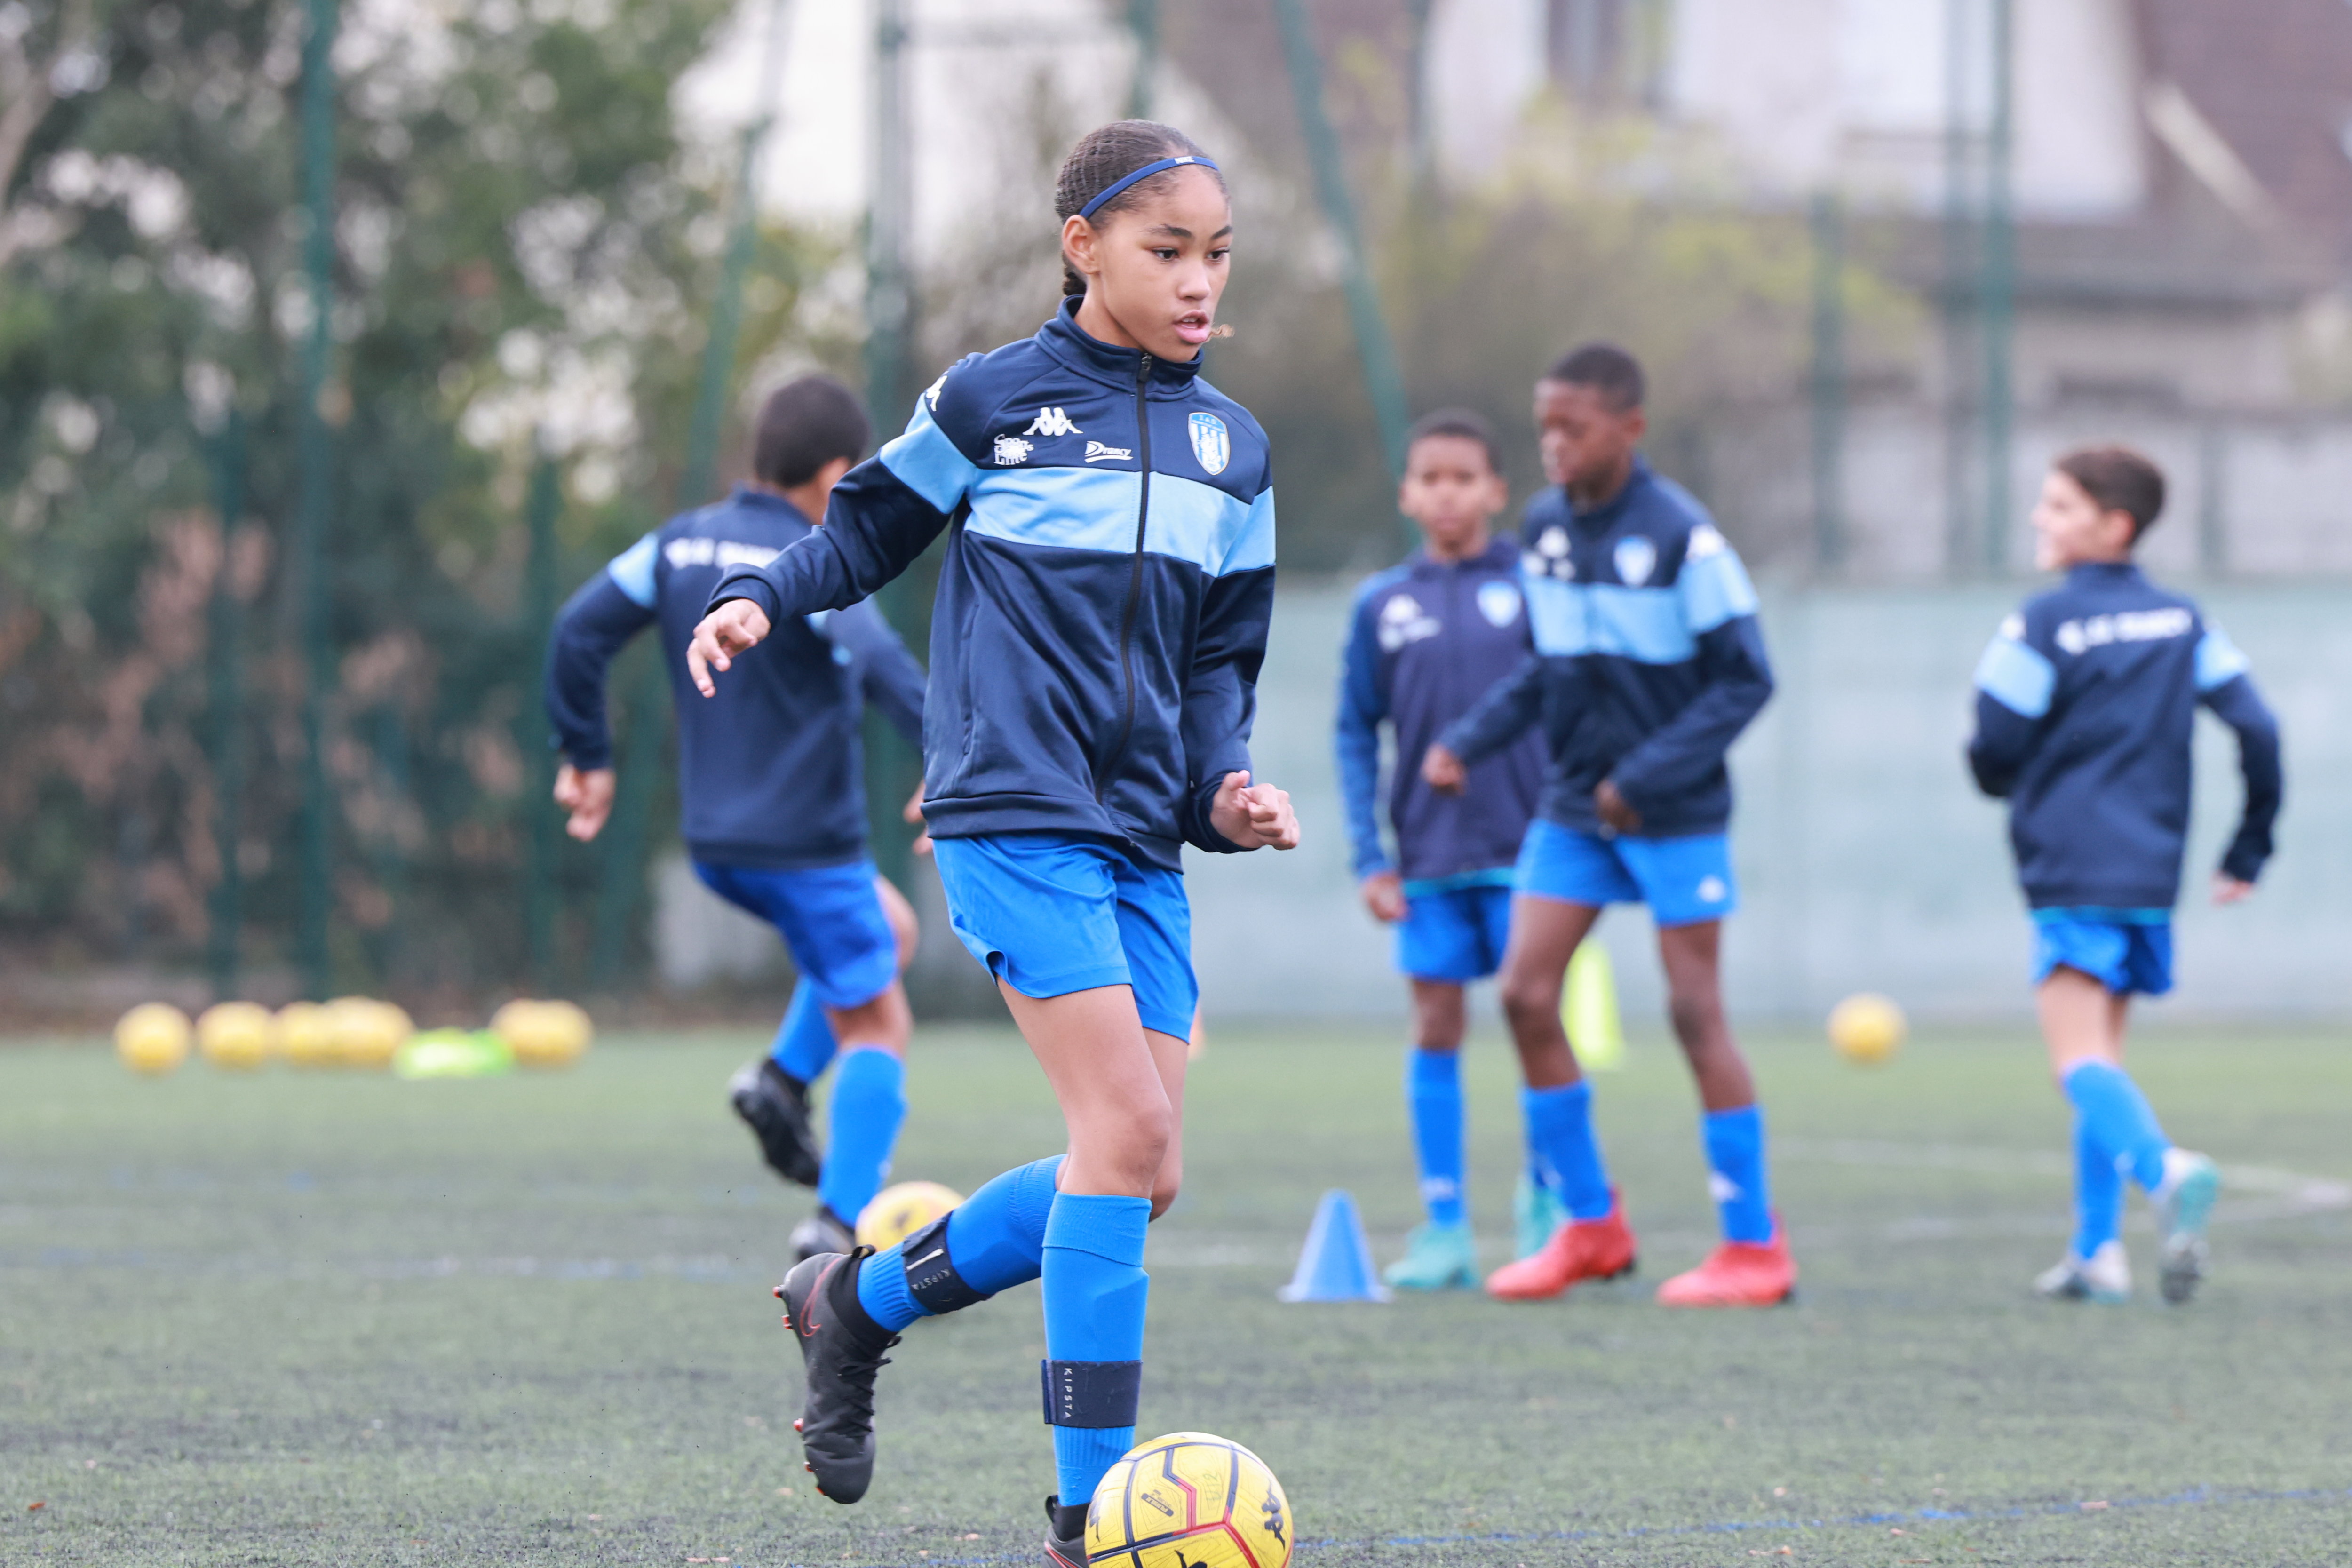 Club phare en matière de formation en Île-de-France, la JA Drancy compte quelque 500 jeunes garçons et filles dans les rangs de son école de football. LP/Philippe Lavieille